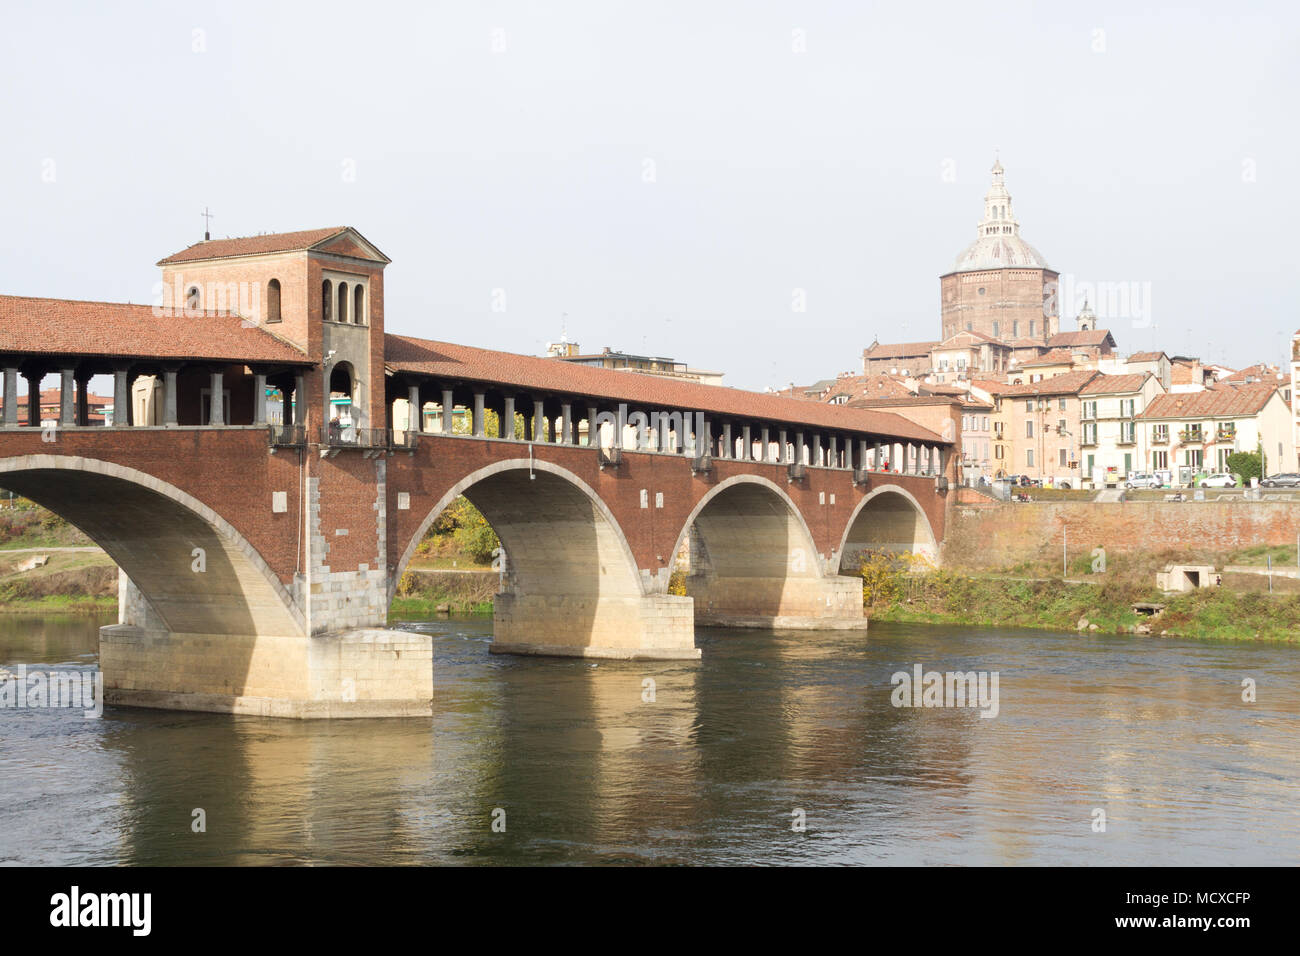 Pavia, Italia. Il 10 novembre 2017. Il Ponte Coperto ("ponte coperto") o il Ponte Vecchio ("Old Bridge') oltre il fiume Ticino in Pavia, Italia. Foto Stock